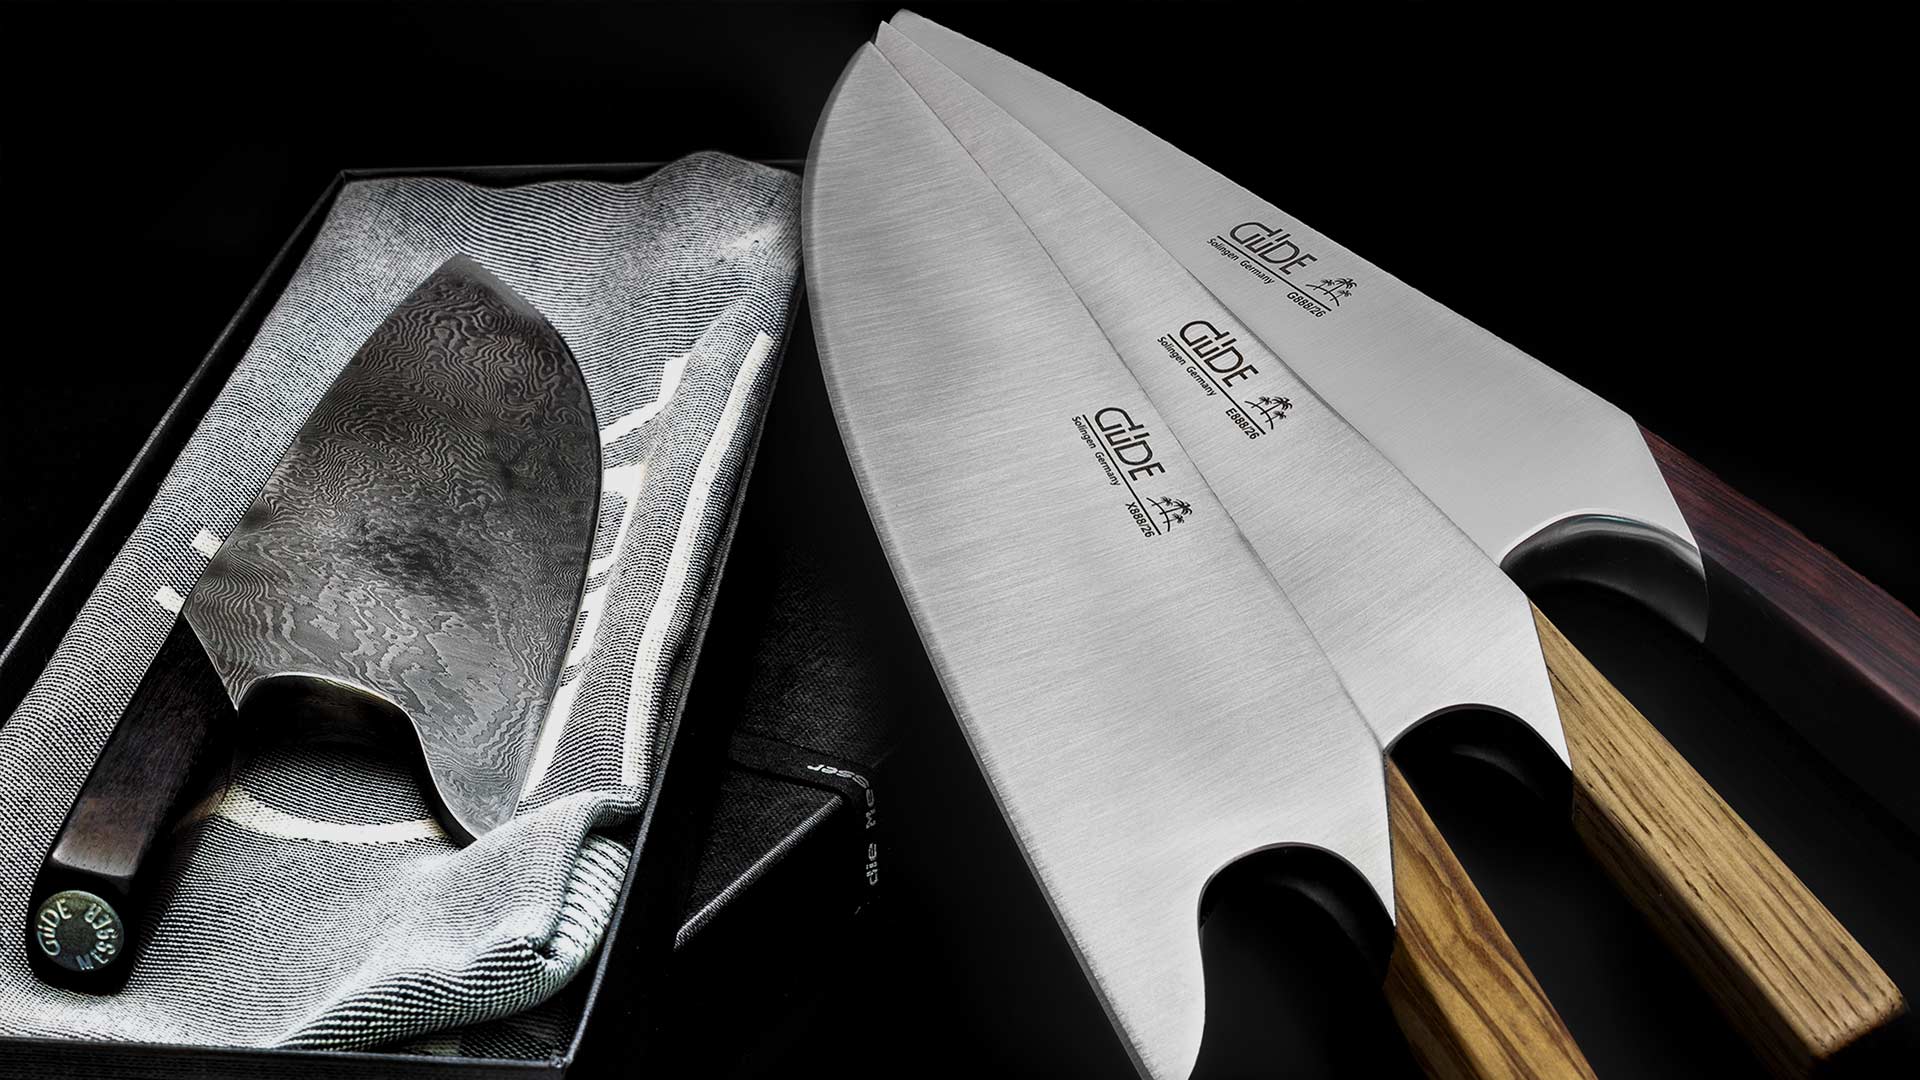 Cuchillos Solingen, Güde cuchillos, cuchillos de cocinero Solingen, juego de cuchillos, chaira, cuchillos solinger